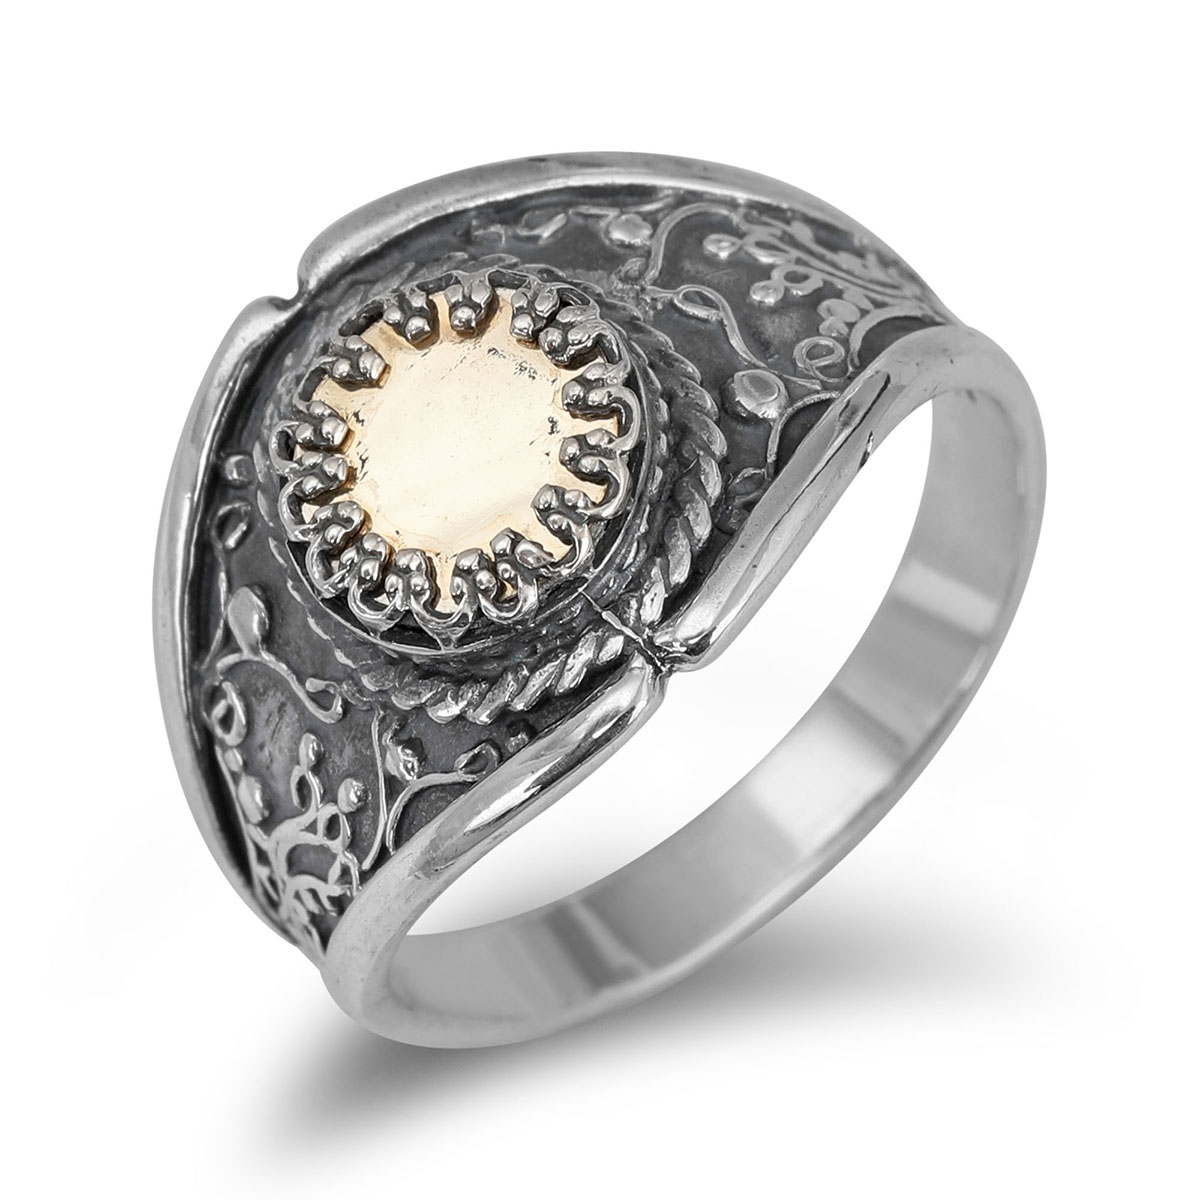 Five-Metal Sterling Silver Kabbalah Ring - 1